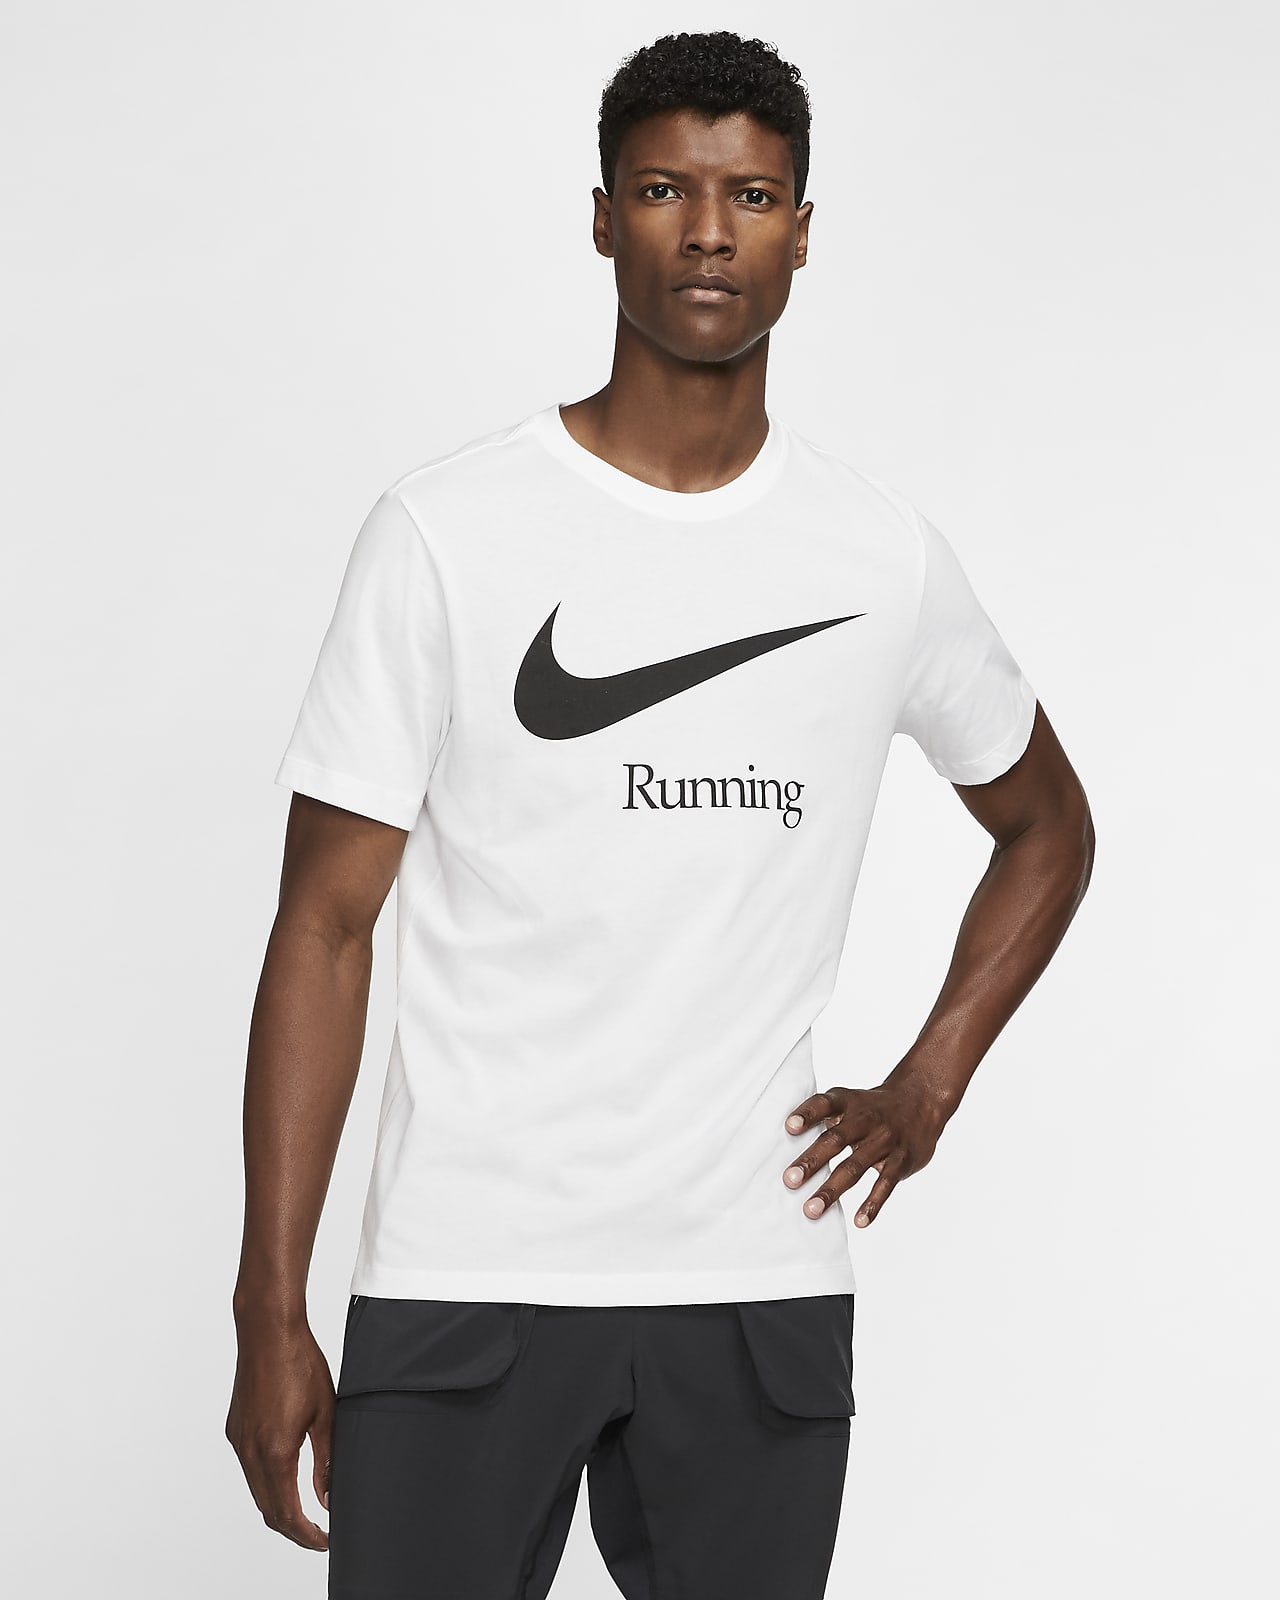 nike running tee shirt